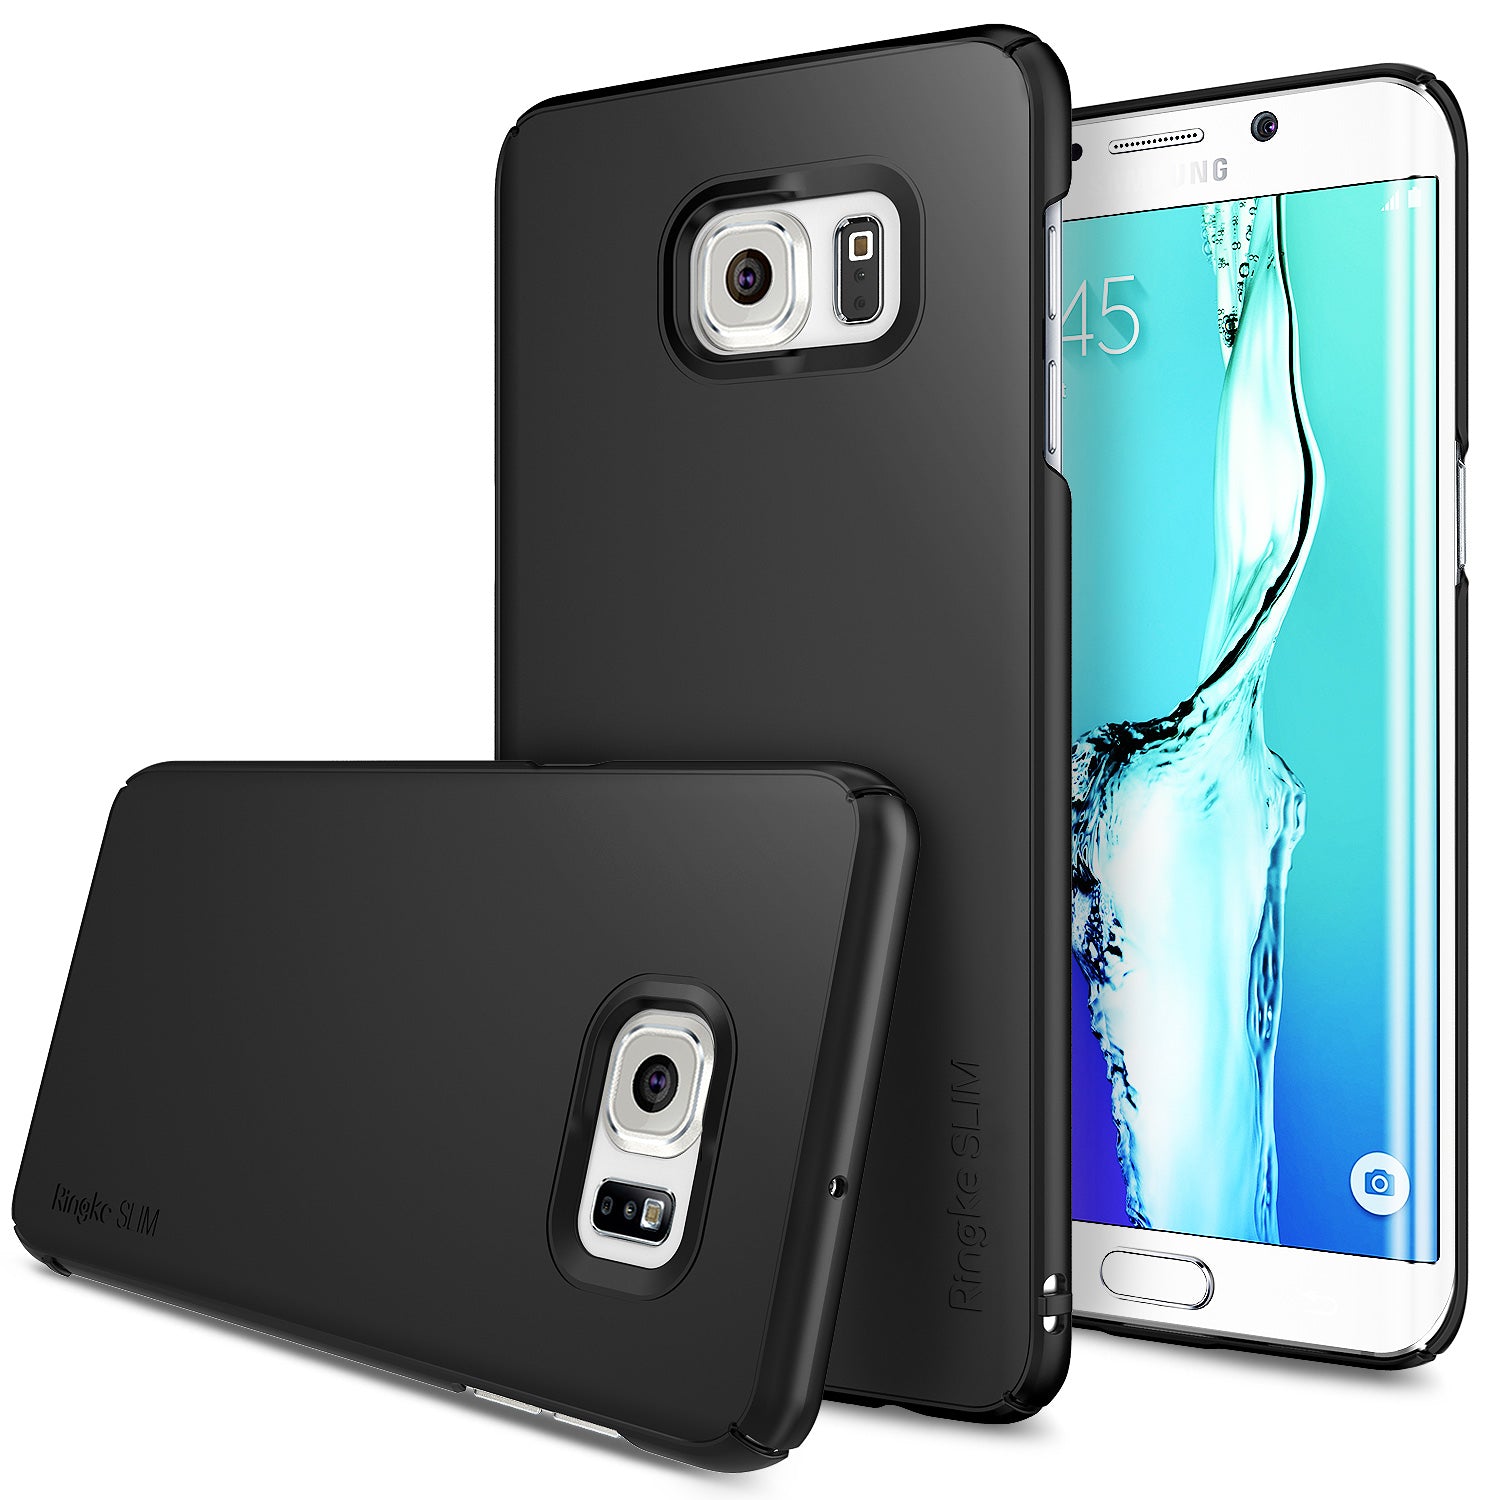 Thuisland zakdoek Van toepassing Galaxy S6 Edge Plus Case | Ringke Slim – Ringke Official Store